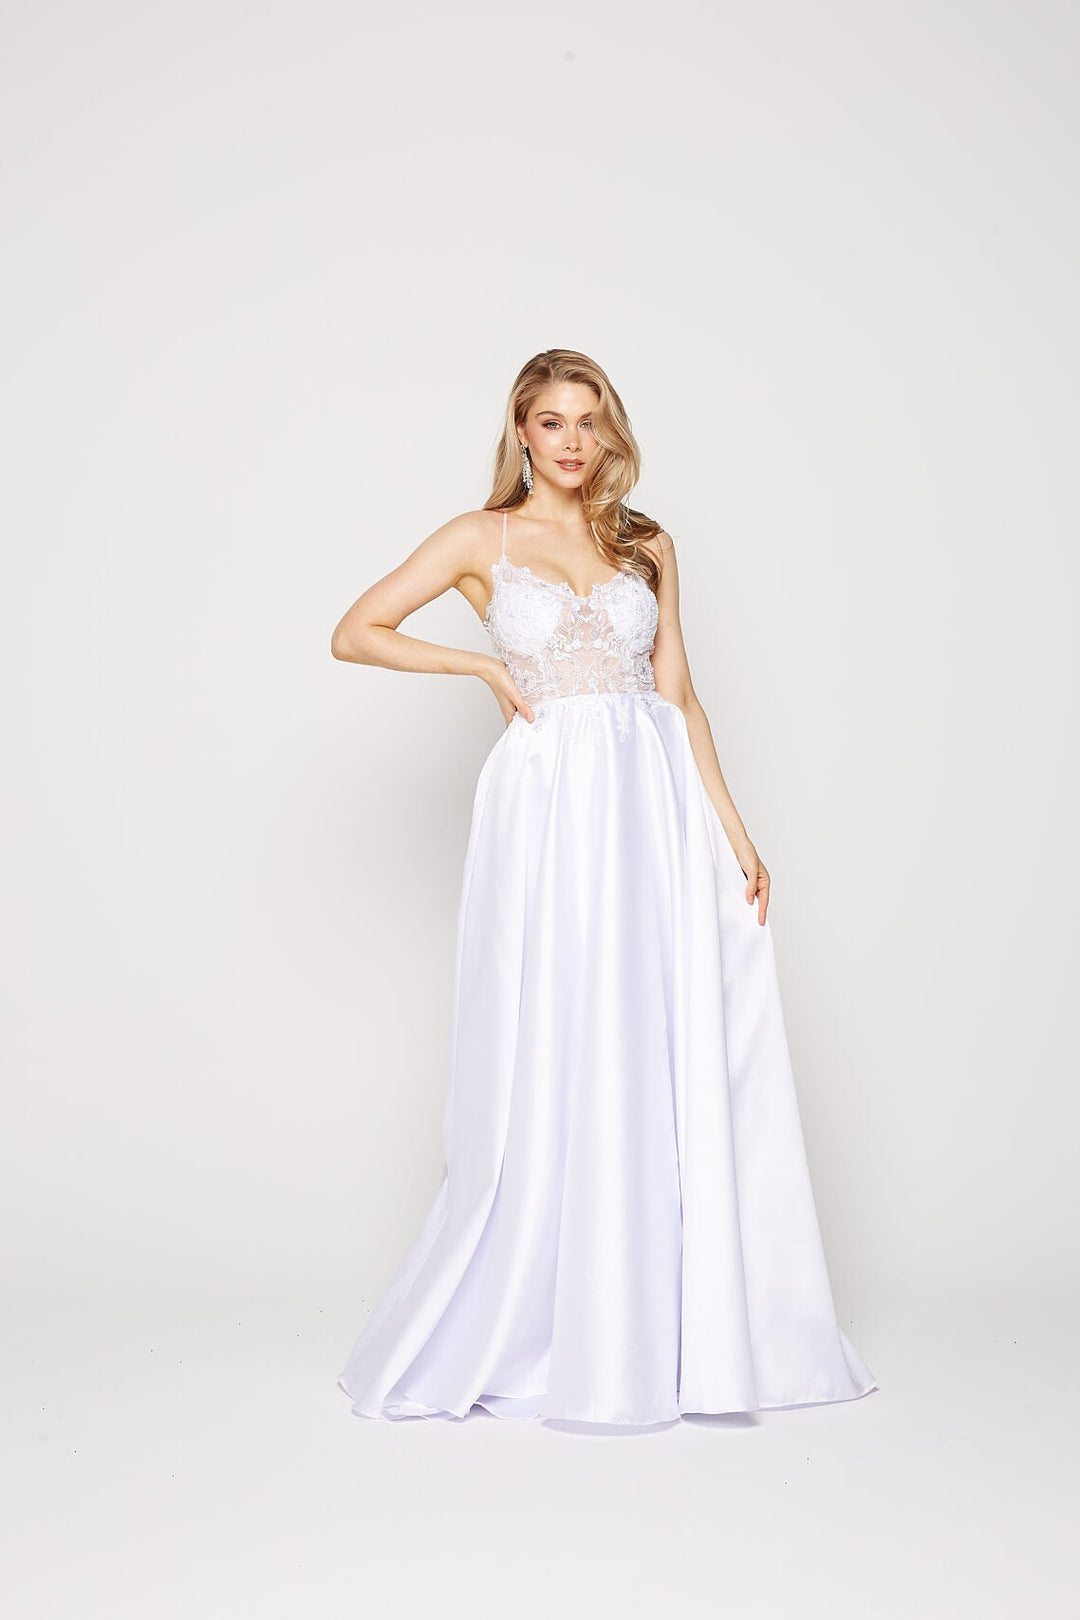 Jacinta Dress in White by Tania Olsen PO2355 - ElissaJay Boutique